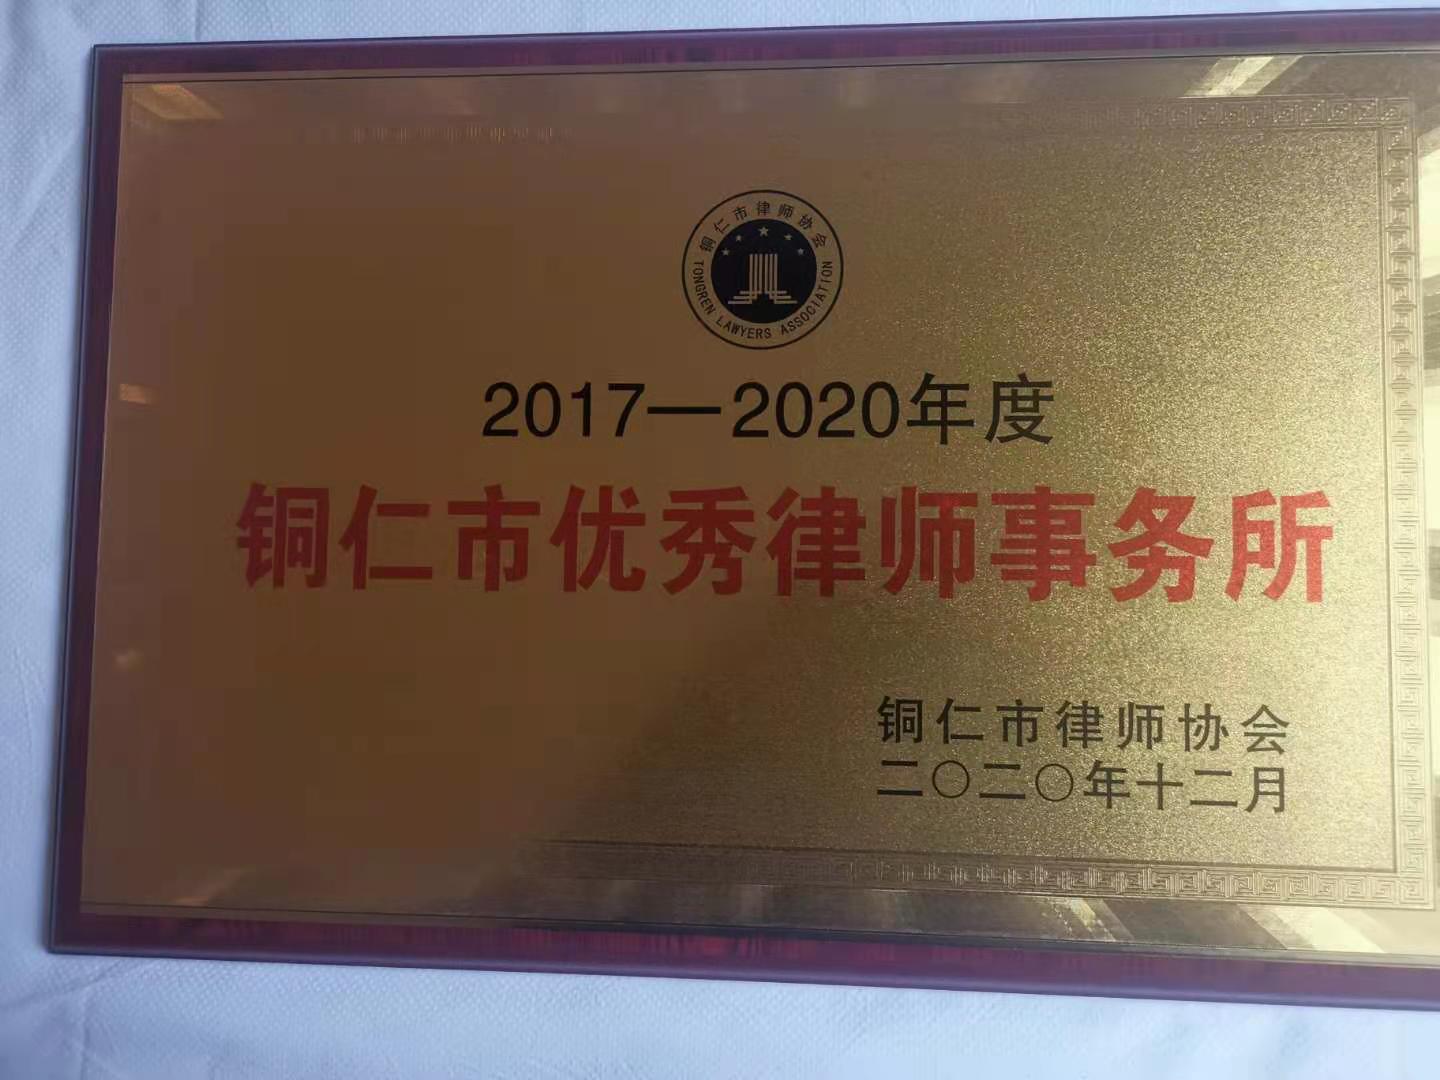 贵州乐云律师事务所荣获优秀律师事务所称号